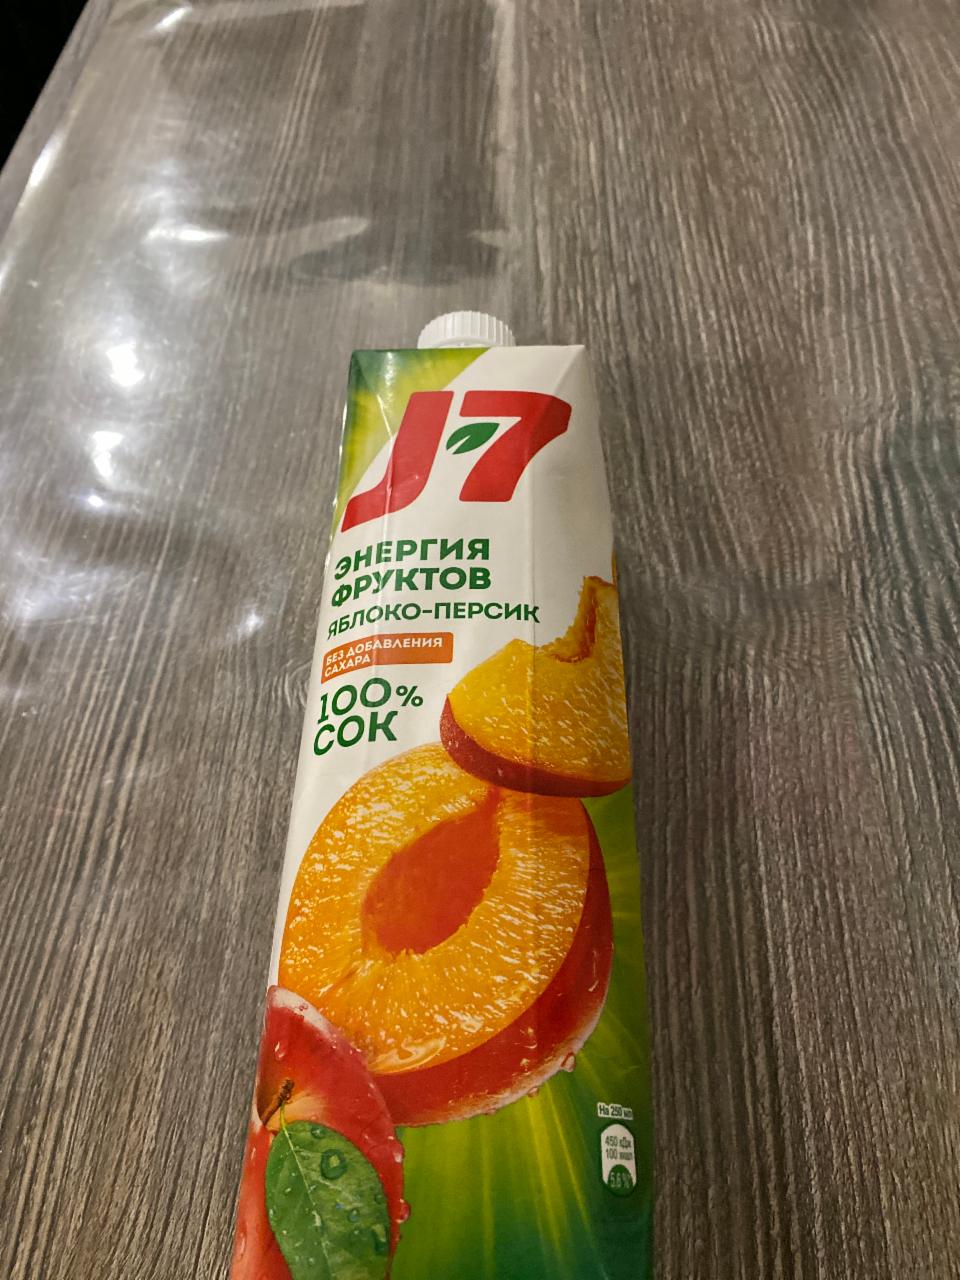 Фото - сок фрукты целиком яблочно-персиковый j7